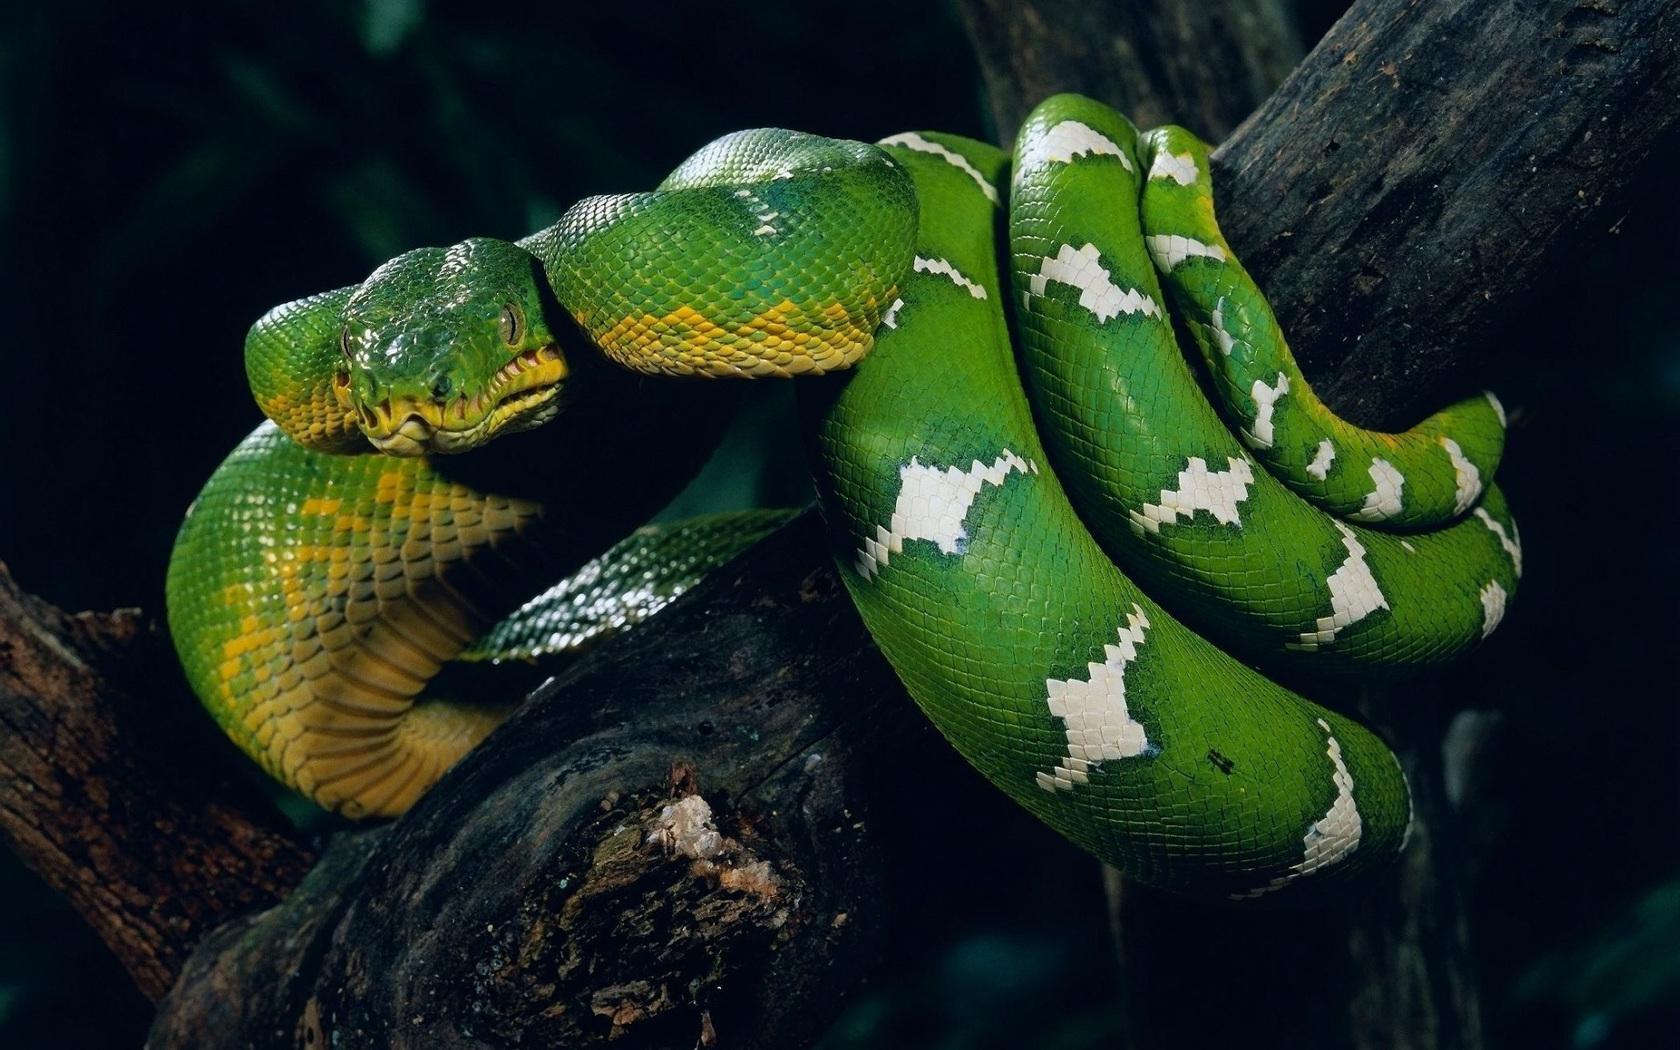 pics of green anaconda snakes download